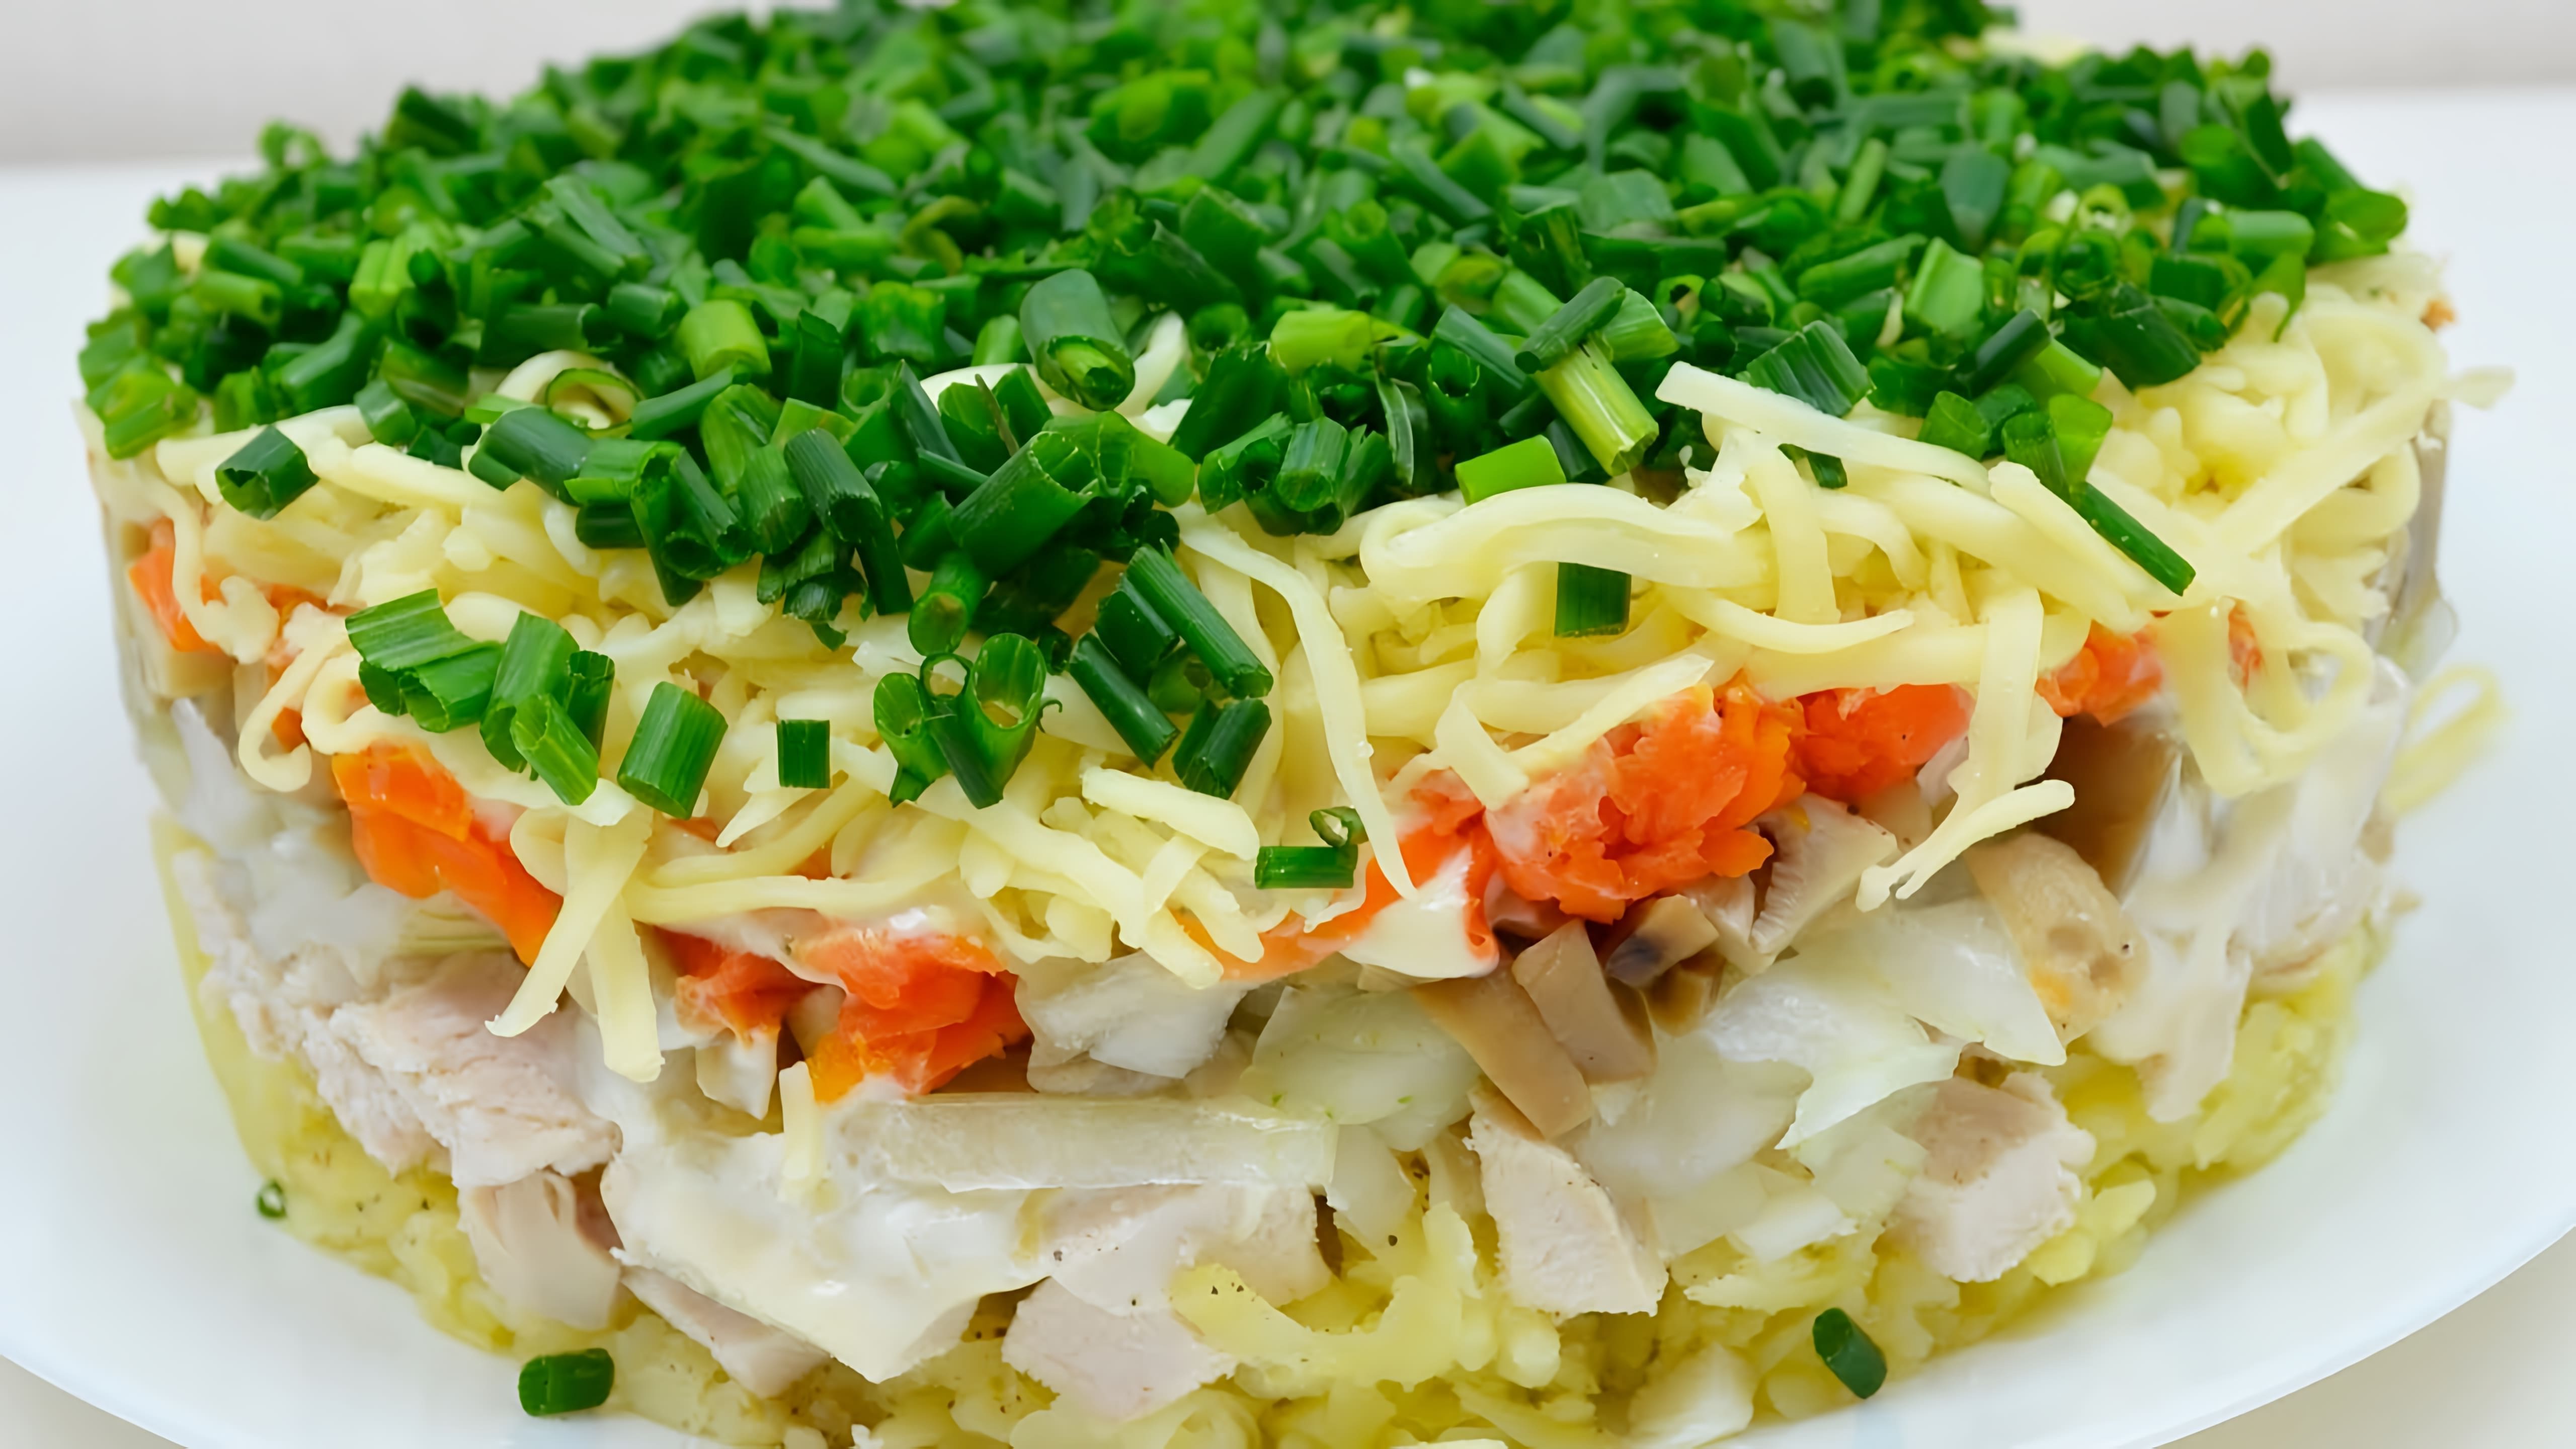 Салат "Русская красавица" - это очень вкусный и нежный салат, который можно приготовить по пошаговому рецепту